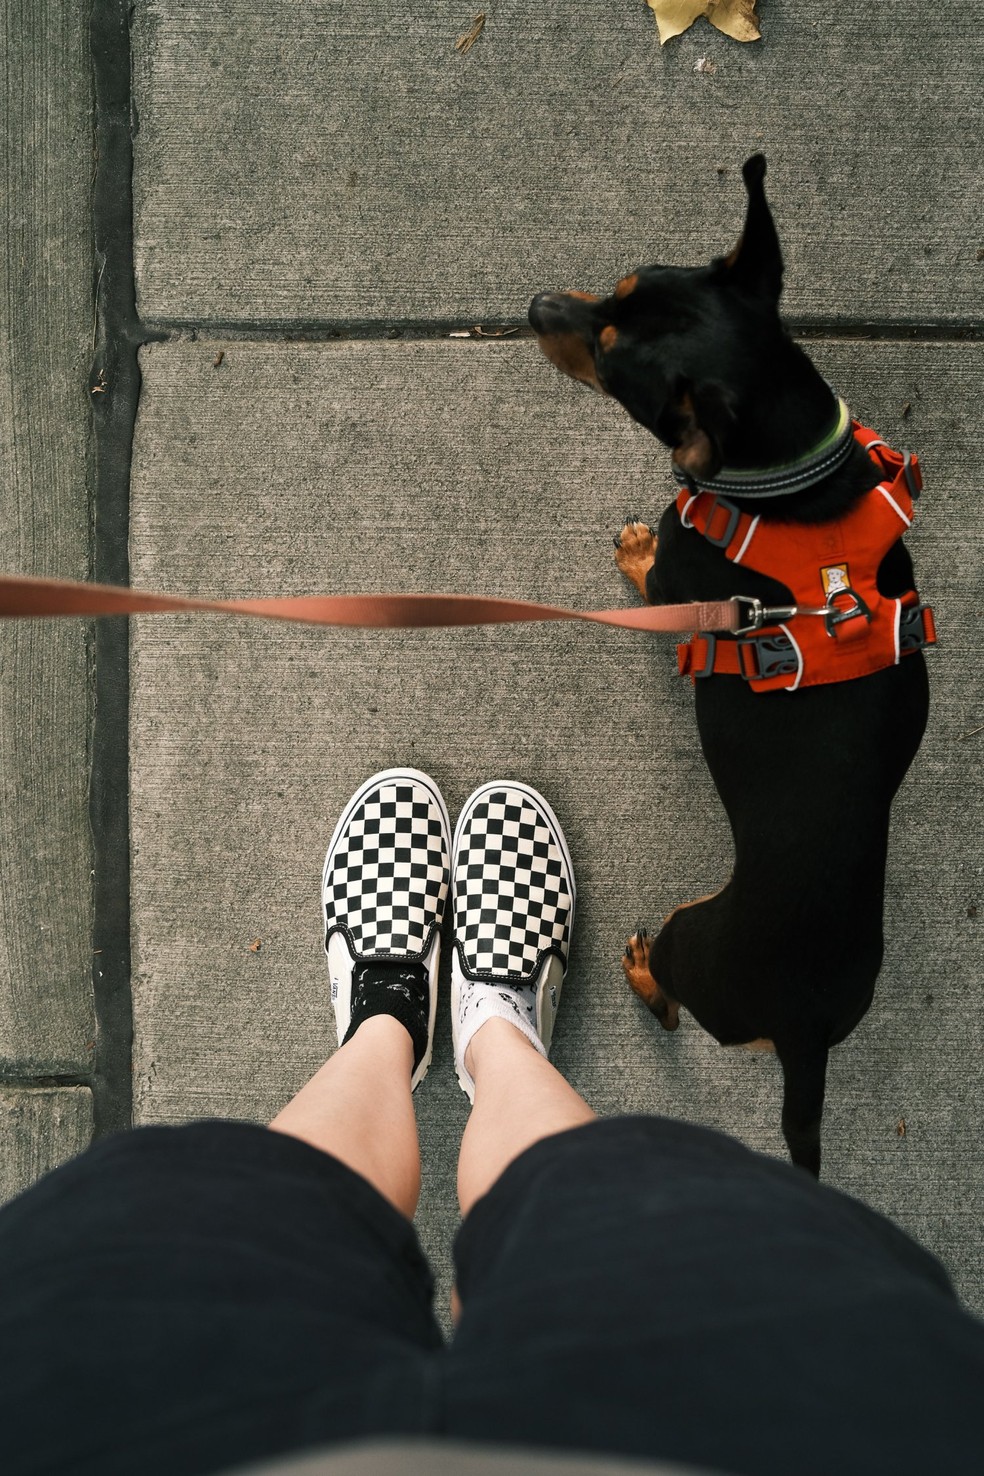 Caminhar com o seu pet fará bem tanto para você, quanto para ele, então não pense duas vezes antes de chamá-lo para um passeio! — Foto: Unsplash/ Taylor Heery/ CreativeCommons